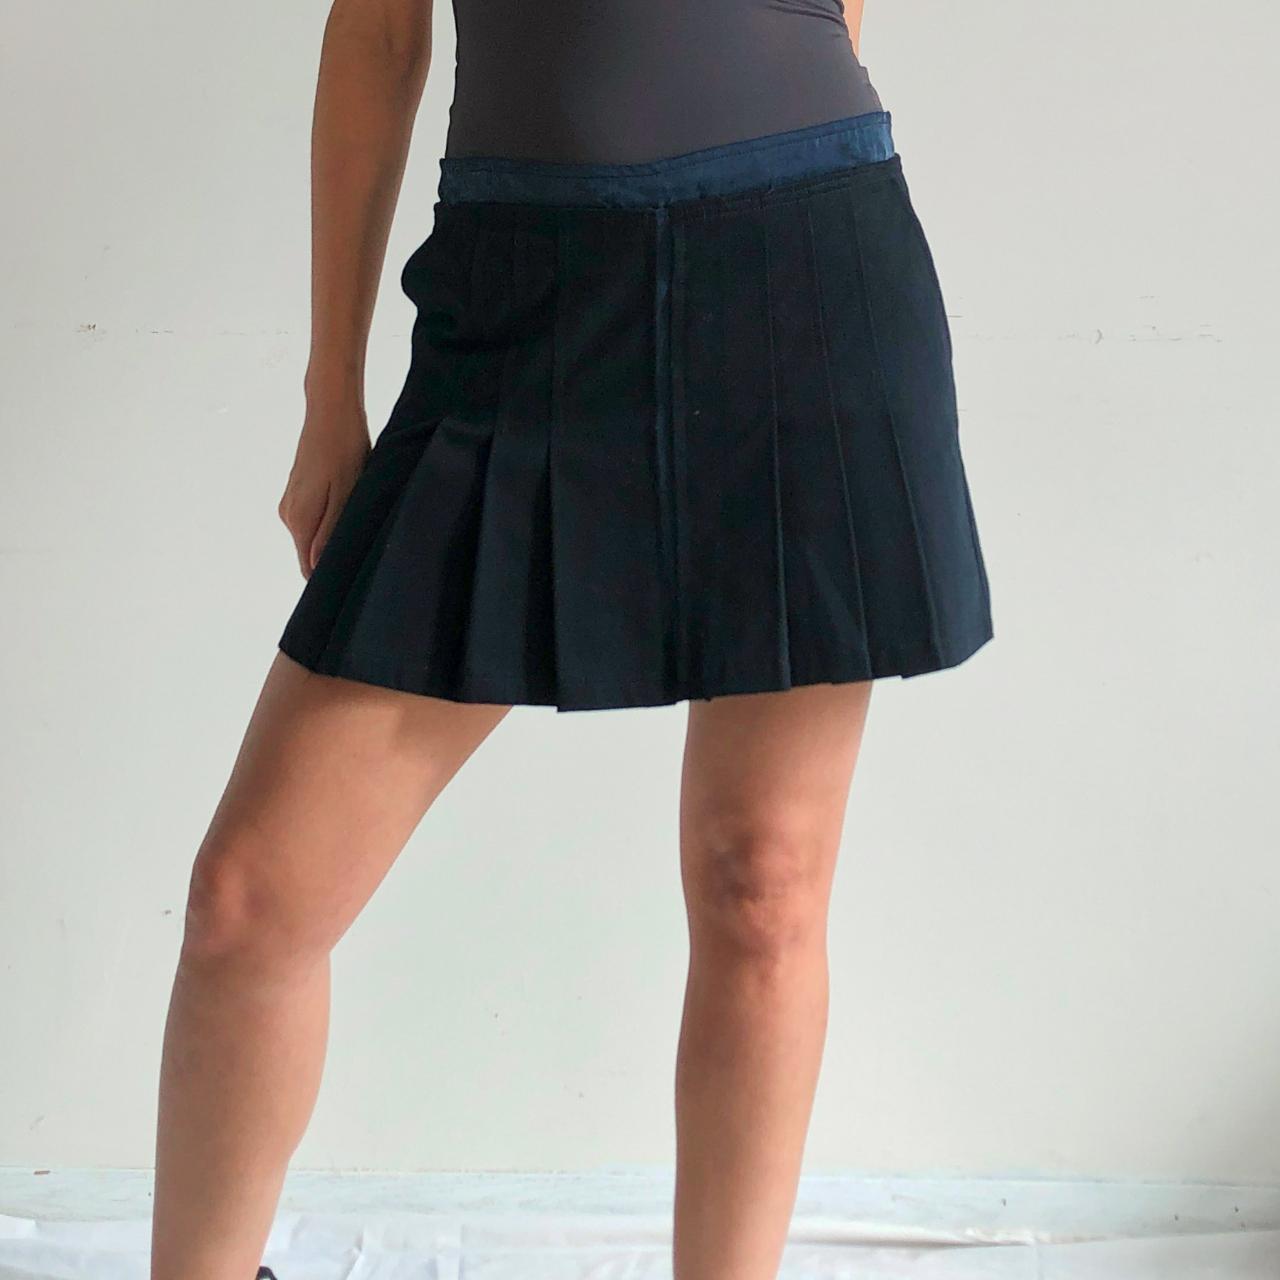 Product Image 2 - navy blue pleated mini skirt

Italian